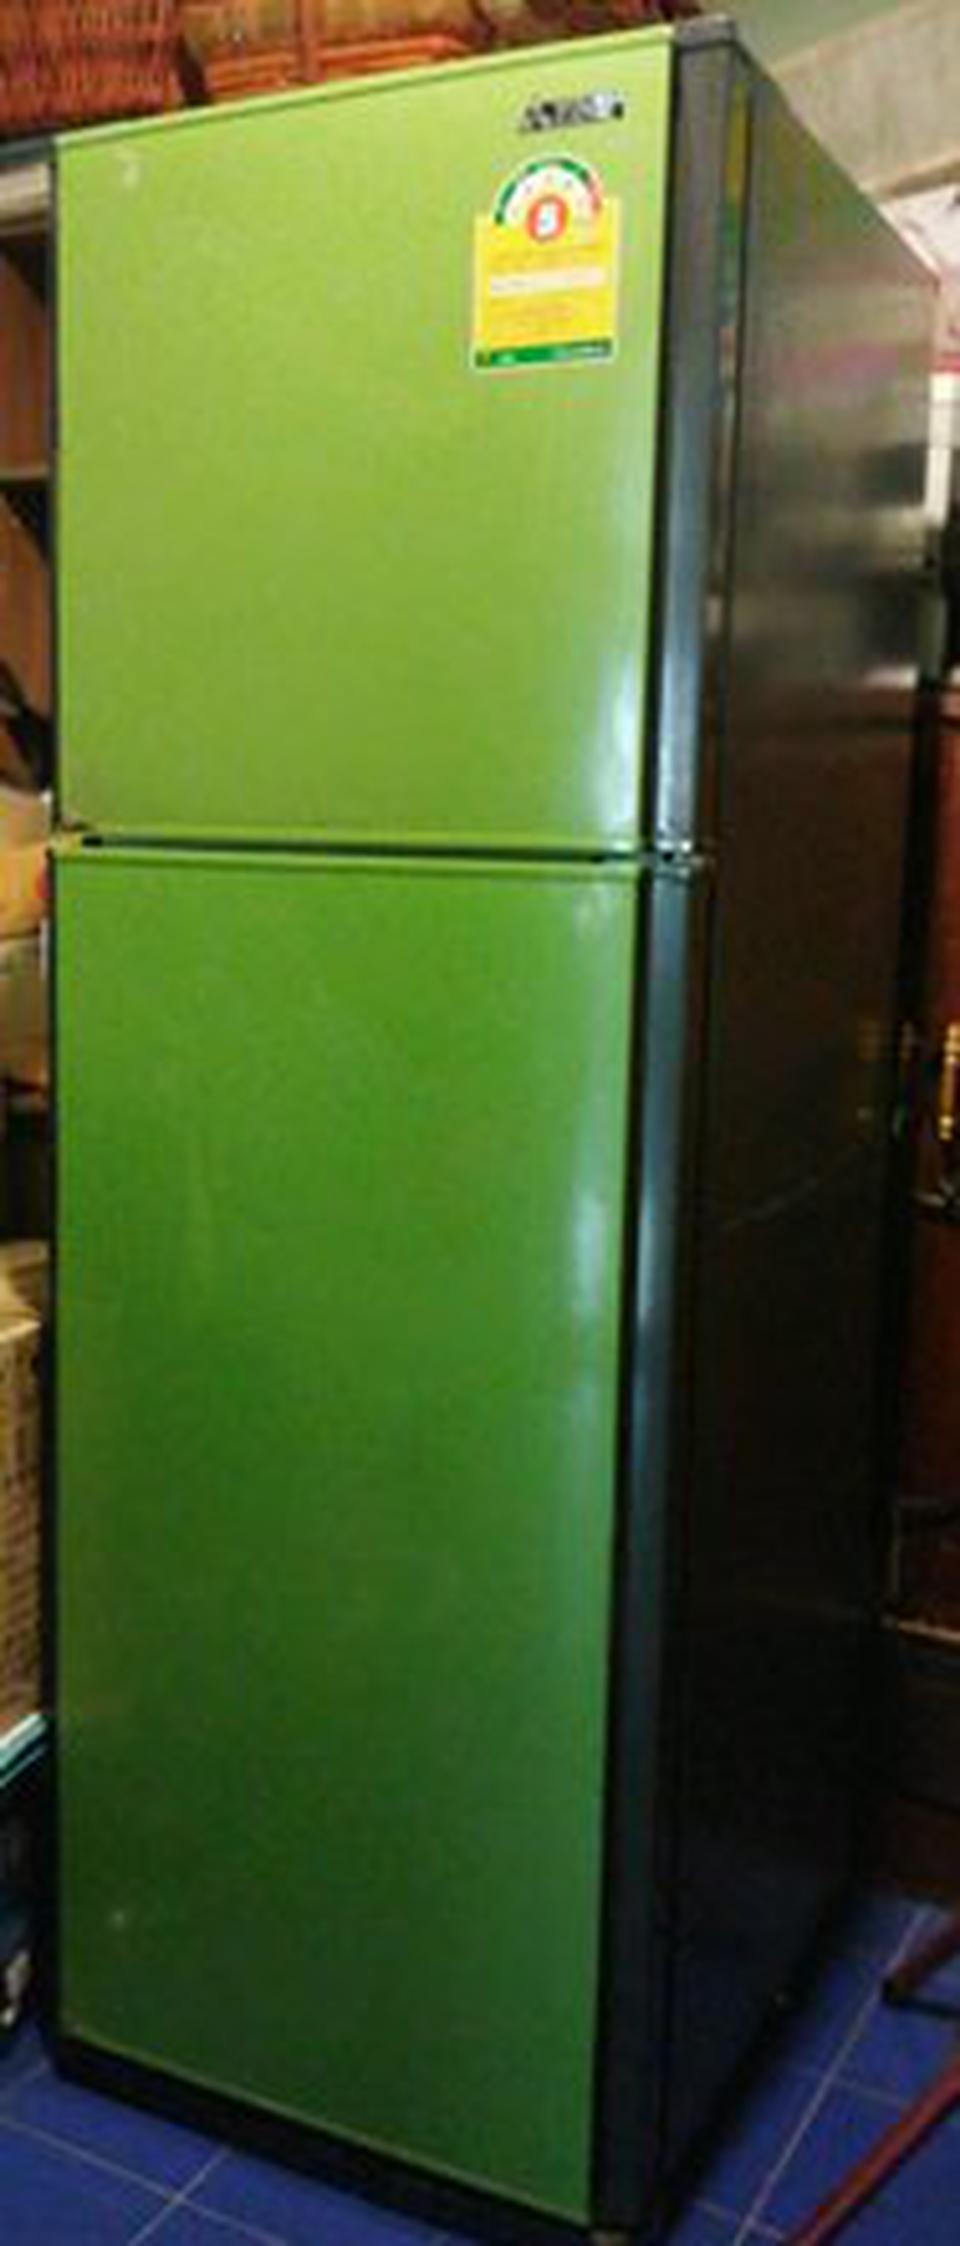 ขายตู้เย็นมือ 2 Mitsubishi Electric รุ่น MR-F26H 8.5 คิว ราคา 1,500 บาท ขนาด 240 ลิตร   2 ประตู  สีเขียว รูปที่ 2